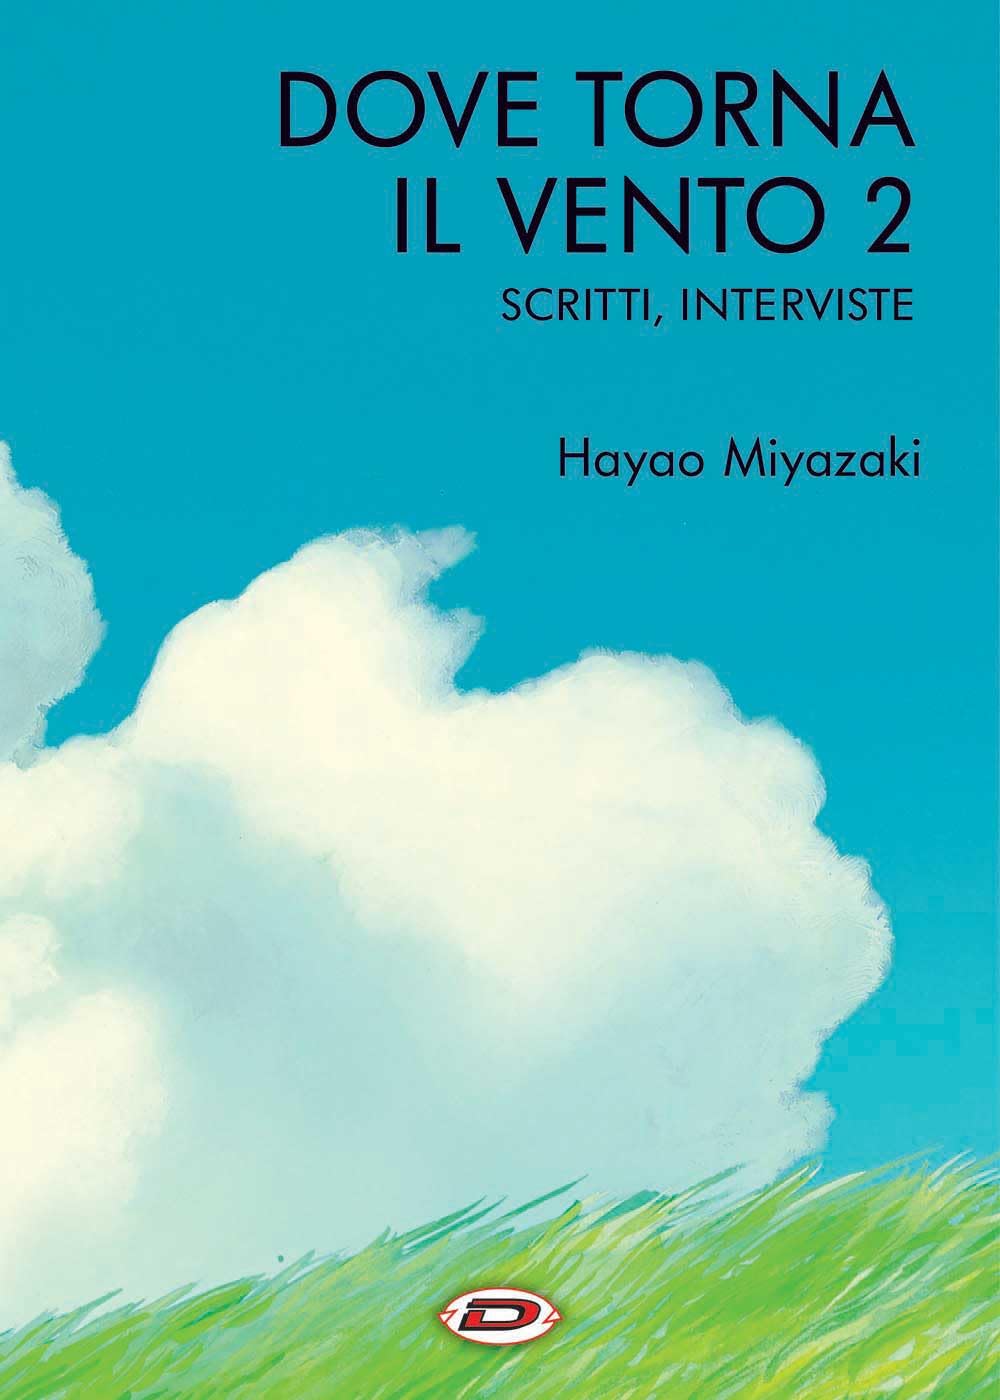 Hayao Miyazaki - Dove torna il vento